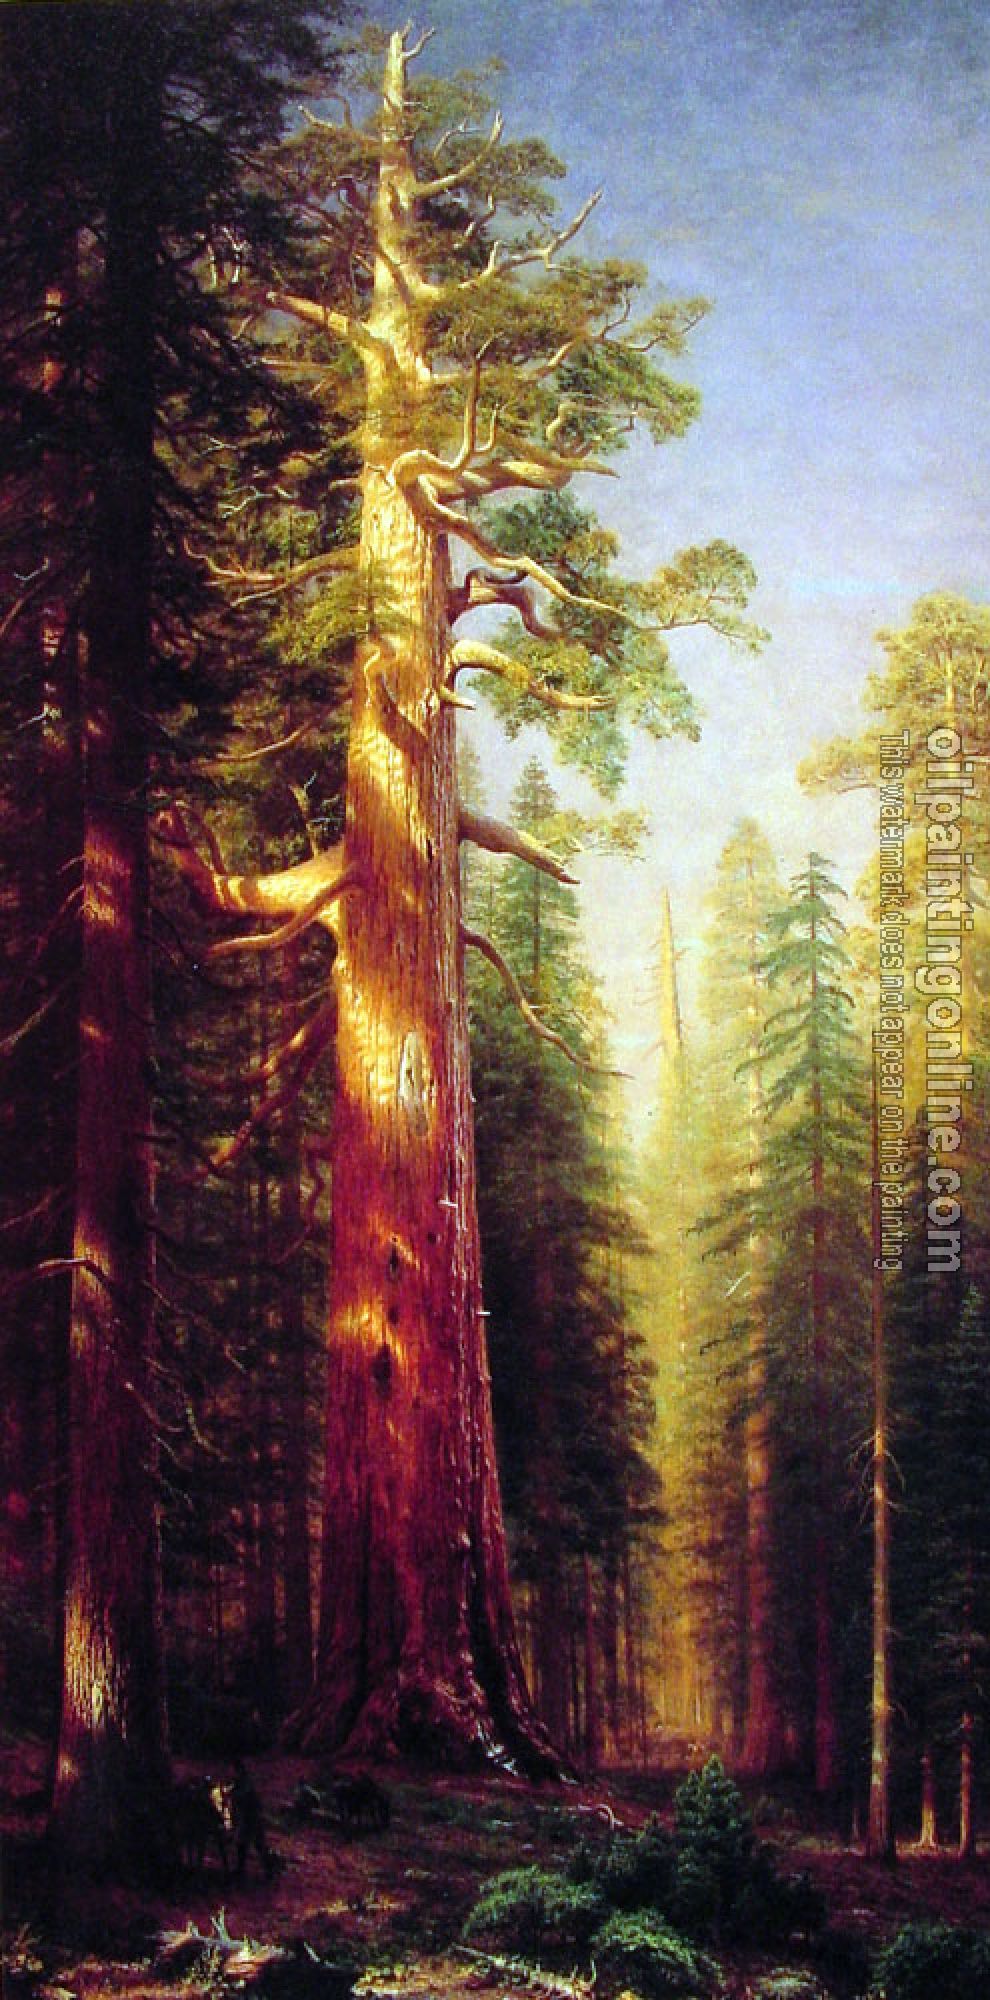 Bierstadt, Albert - The Great Trees